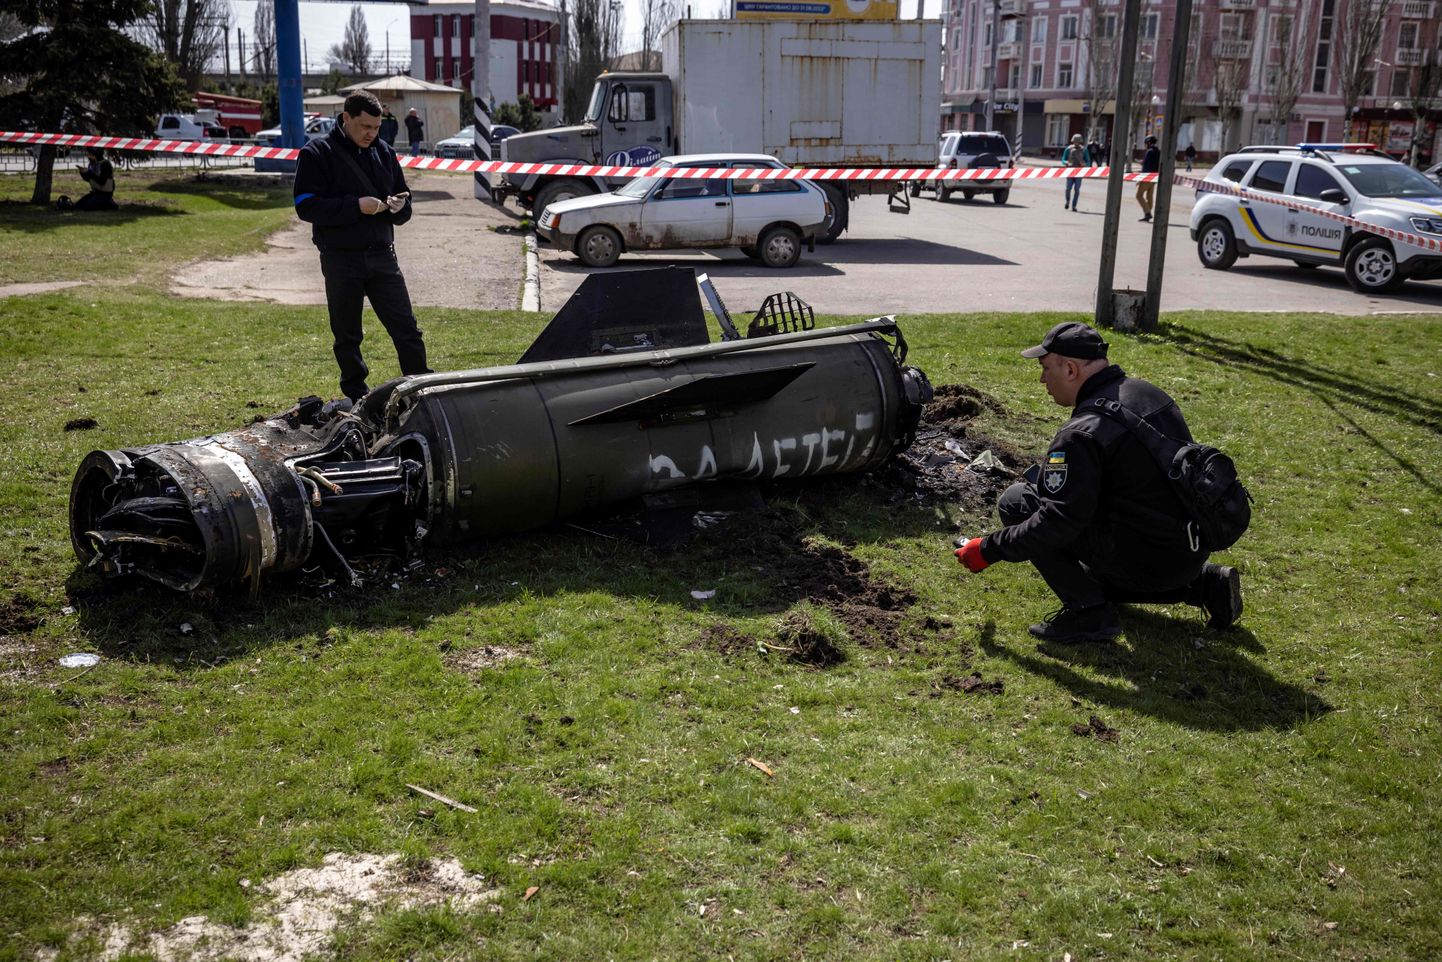 Ukraina politsei uurib 8. aprillil Kramatorskit tabanud raketti, millel on kirjas «за детей», mis tähendab «laste eest»